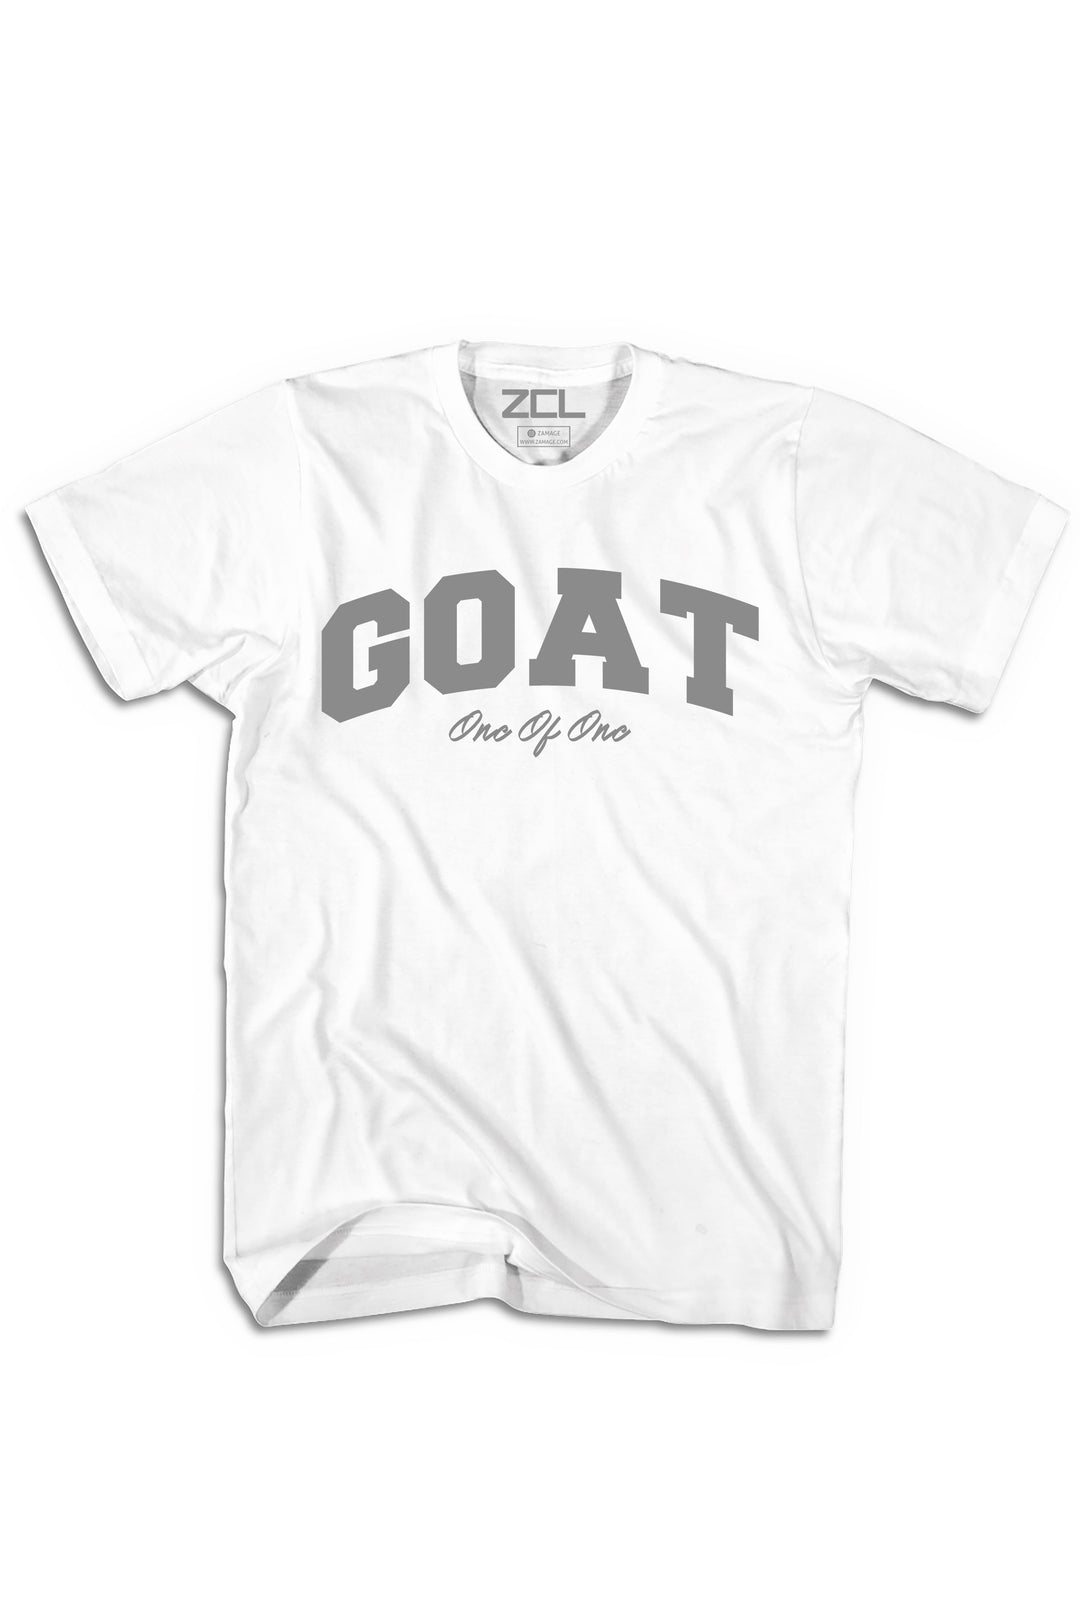 Goat Tee (Grey Logo) - Zamage